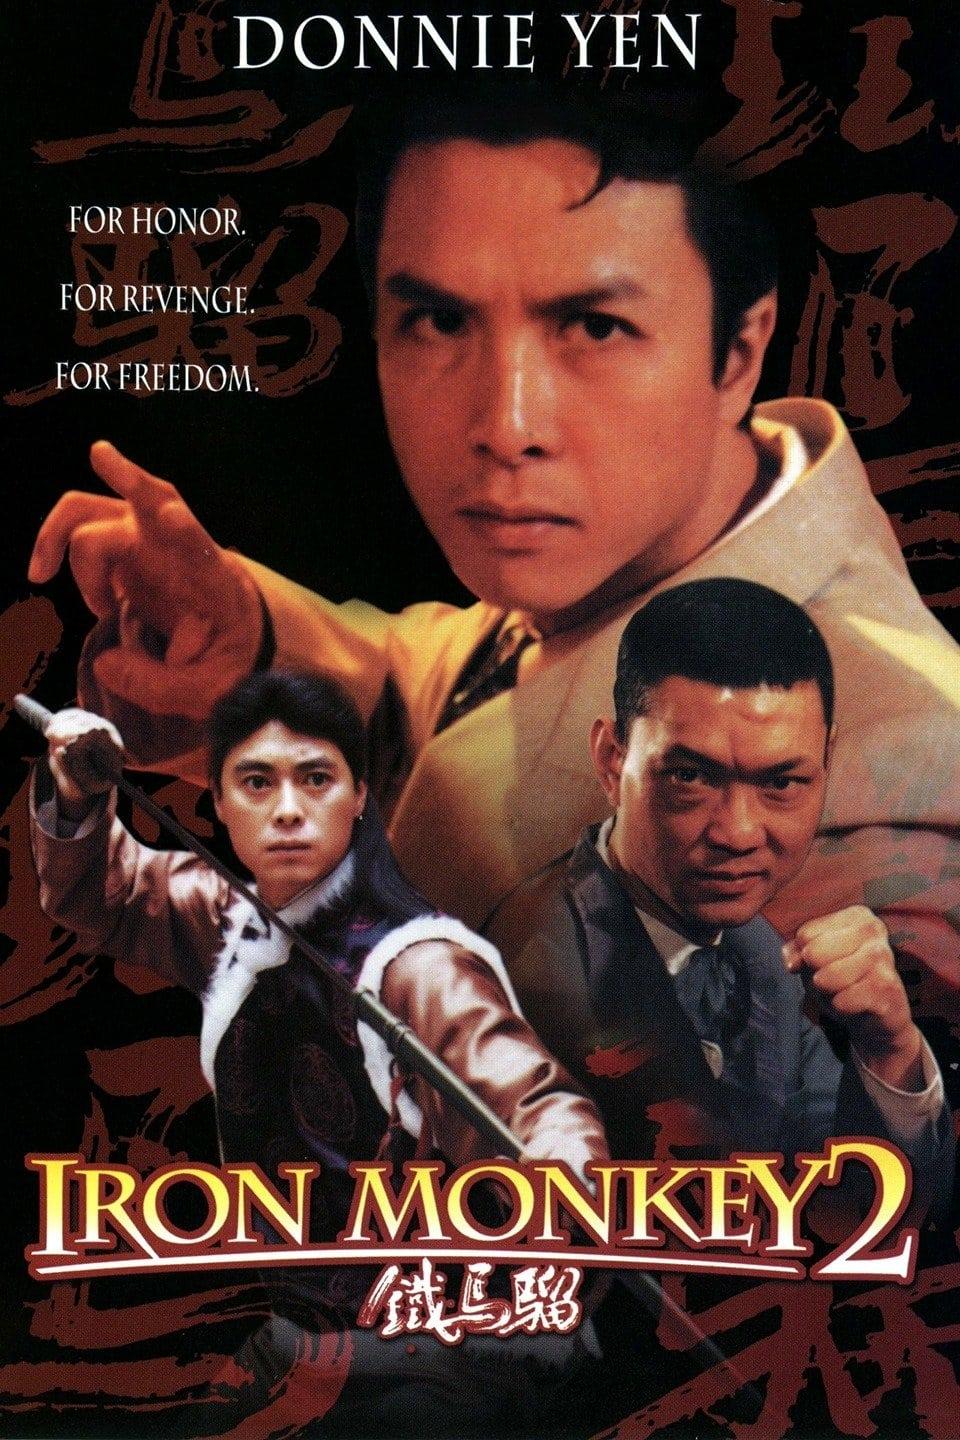 Iron Monkey 2 poster